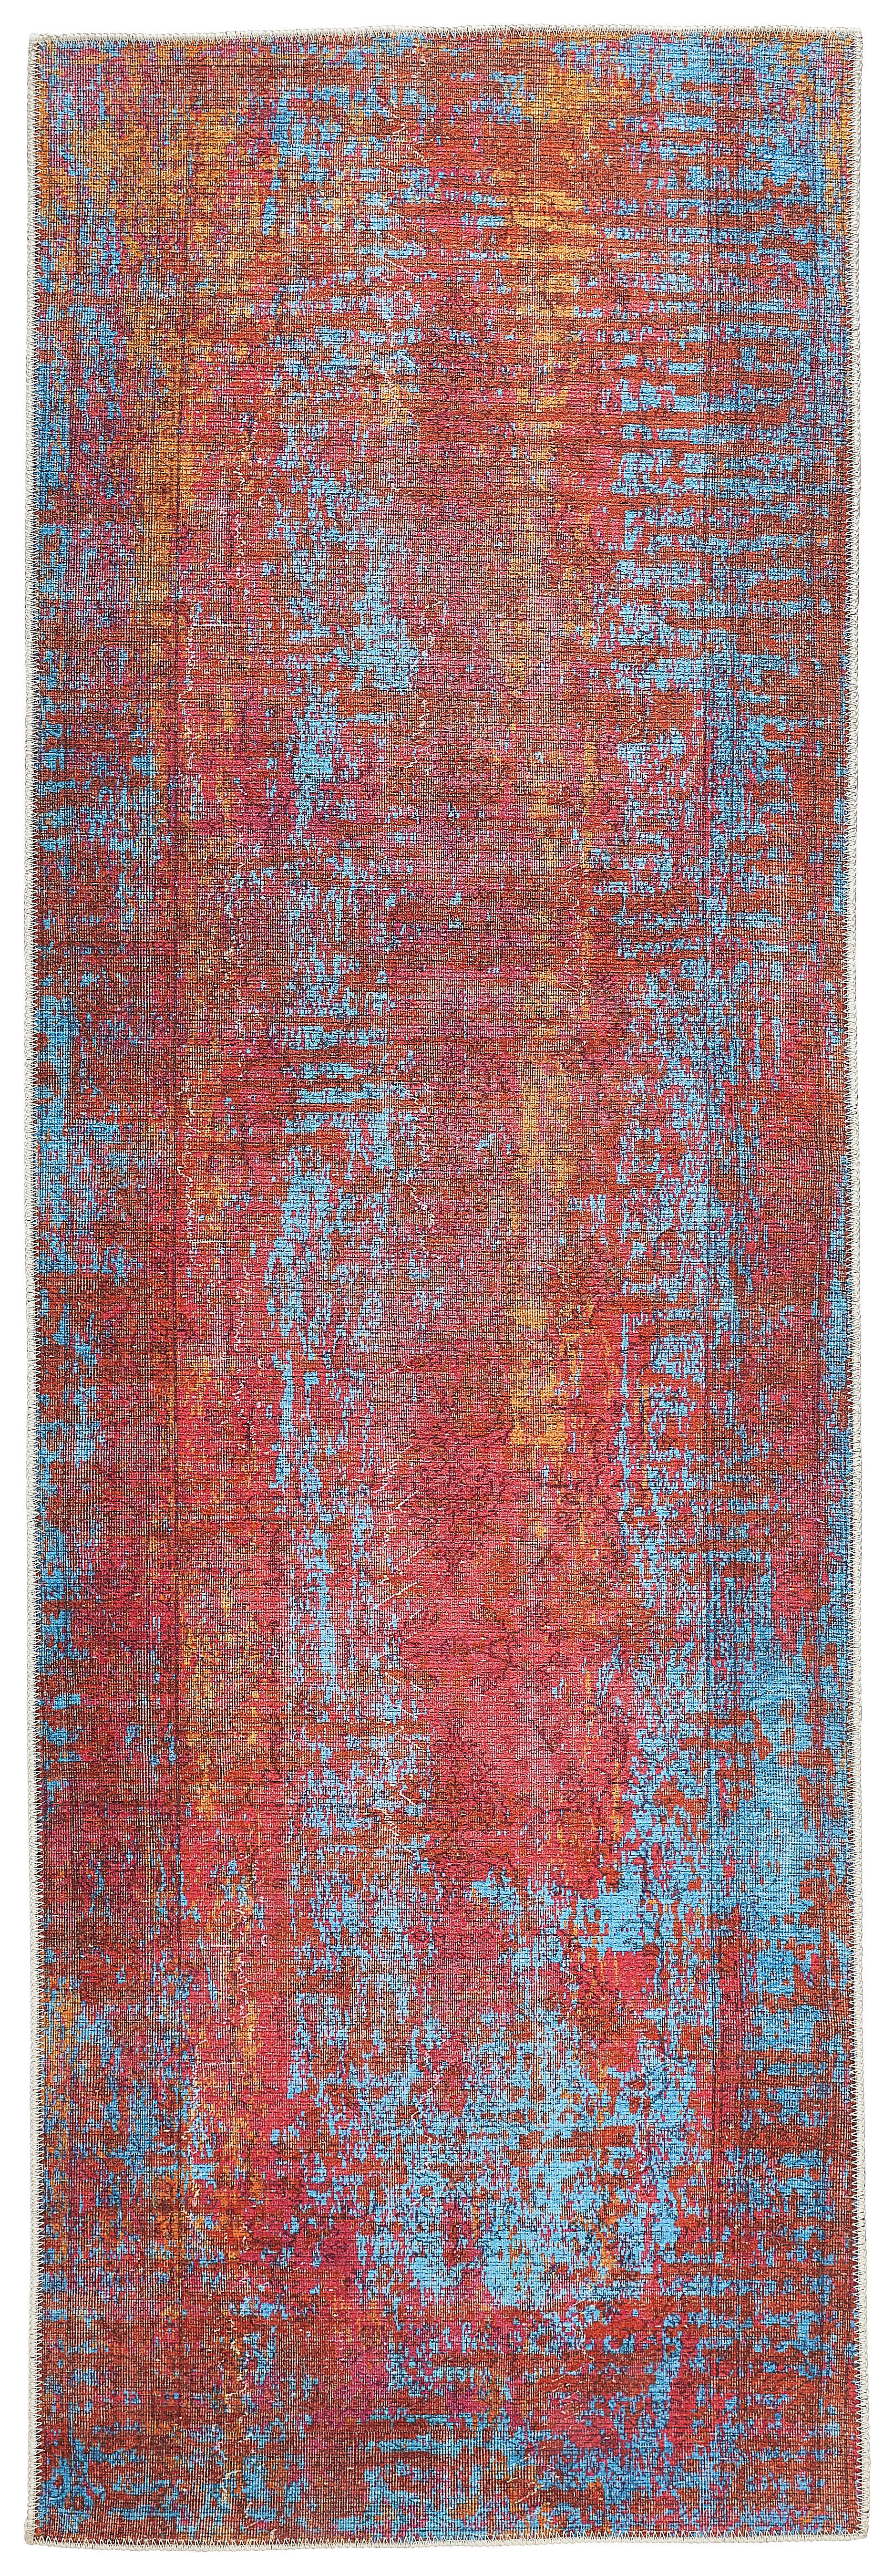 LÄUFER 80/250 cm  - Rot/Multicolor, Trend, Textil (80/250cm) - Novel